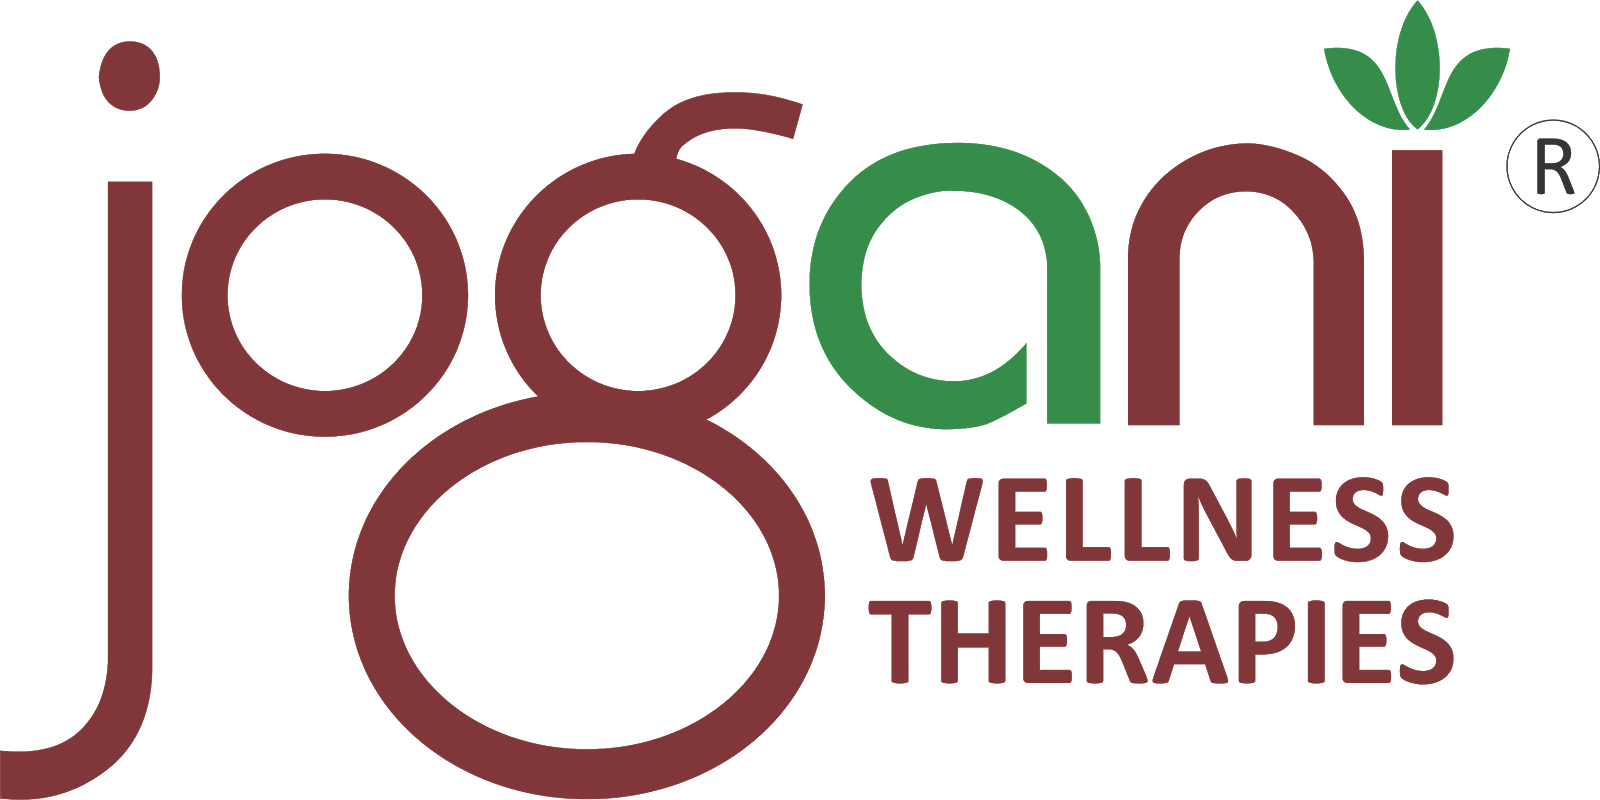 Jogani Wellness